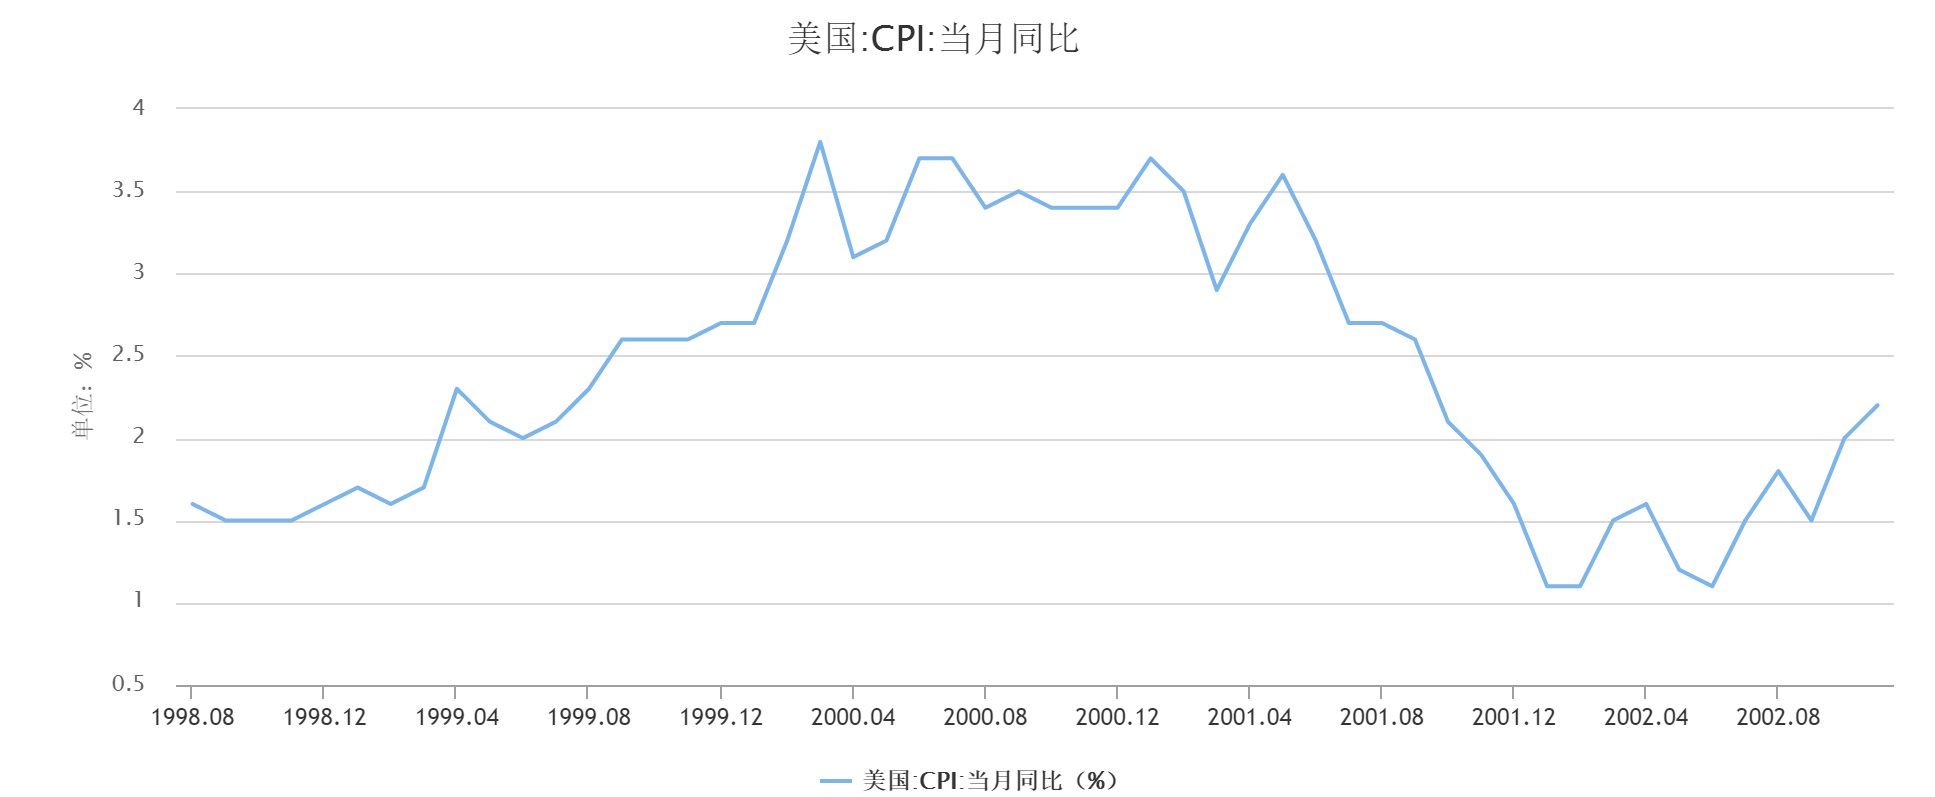 日本宣布零利率,宽松预期大增,对国际资本、汇